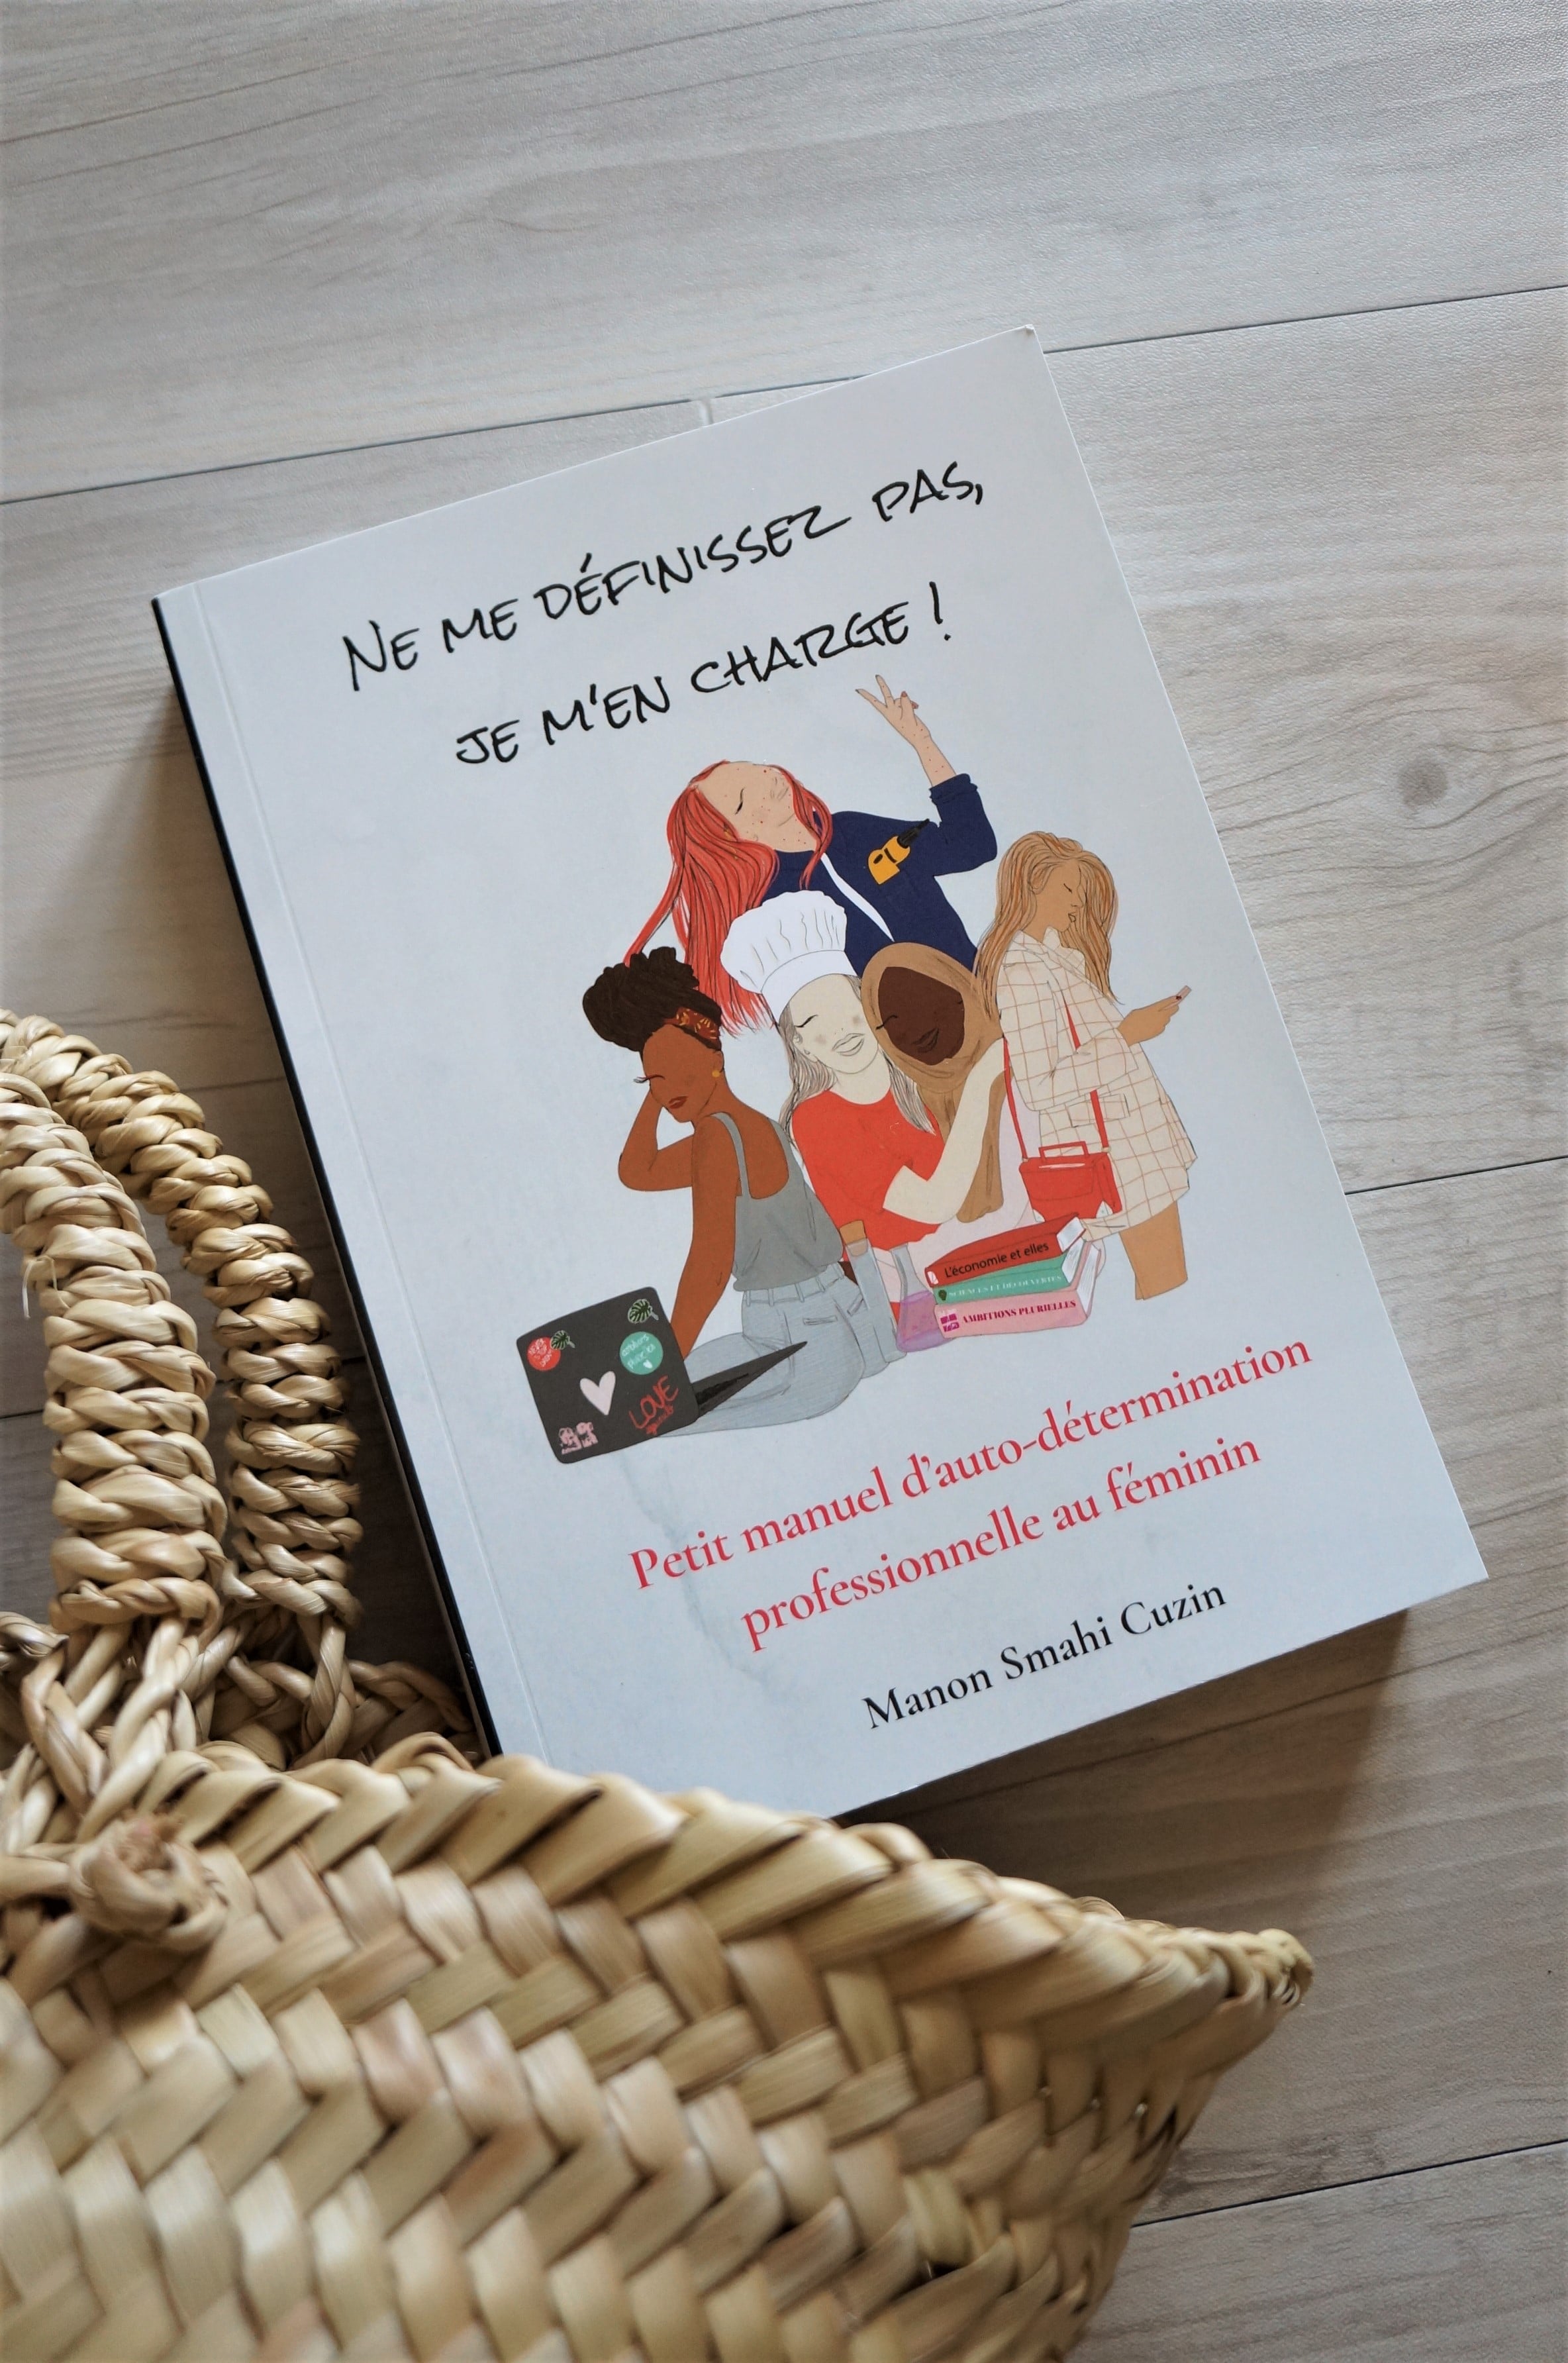 Le livre Ne me définissez pas, je m'en charge - Petit manuel d'auto-détermination professionnelle au féminin - Manon Smahi Cuzin - Ambitions Plurielles